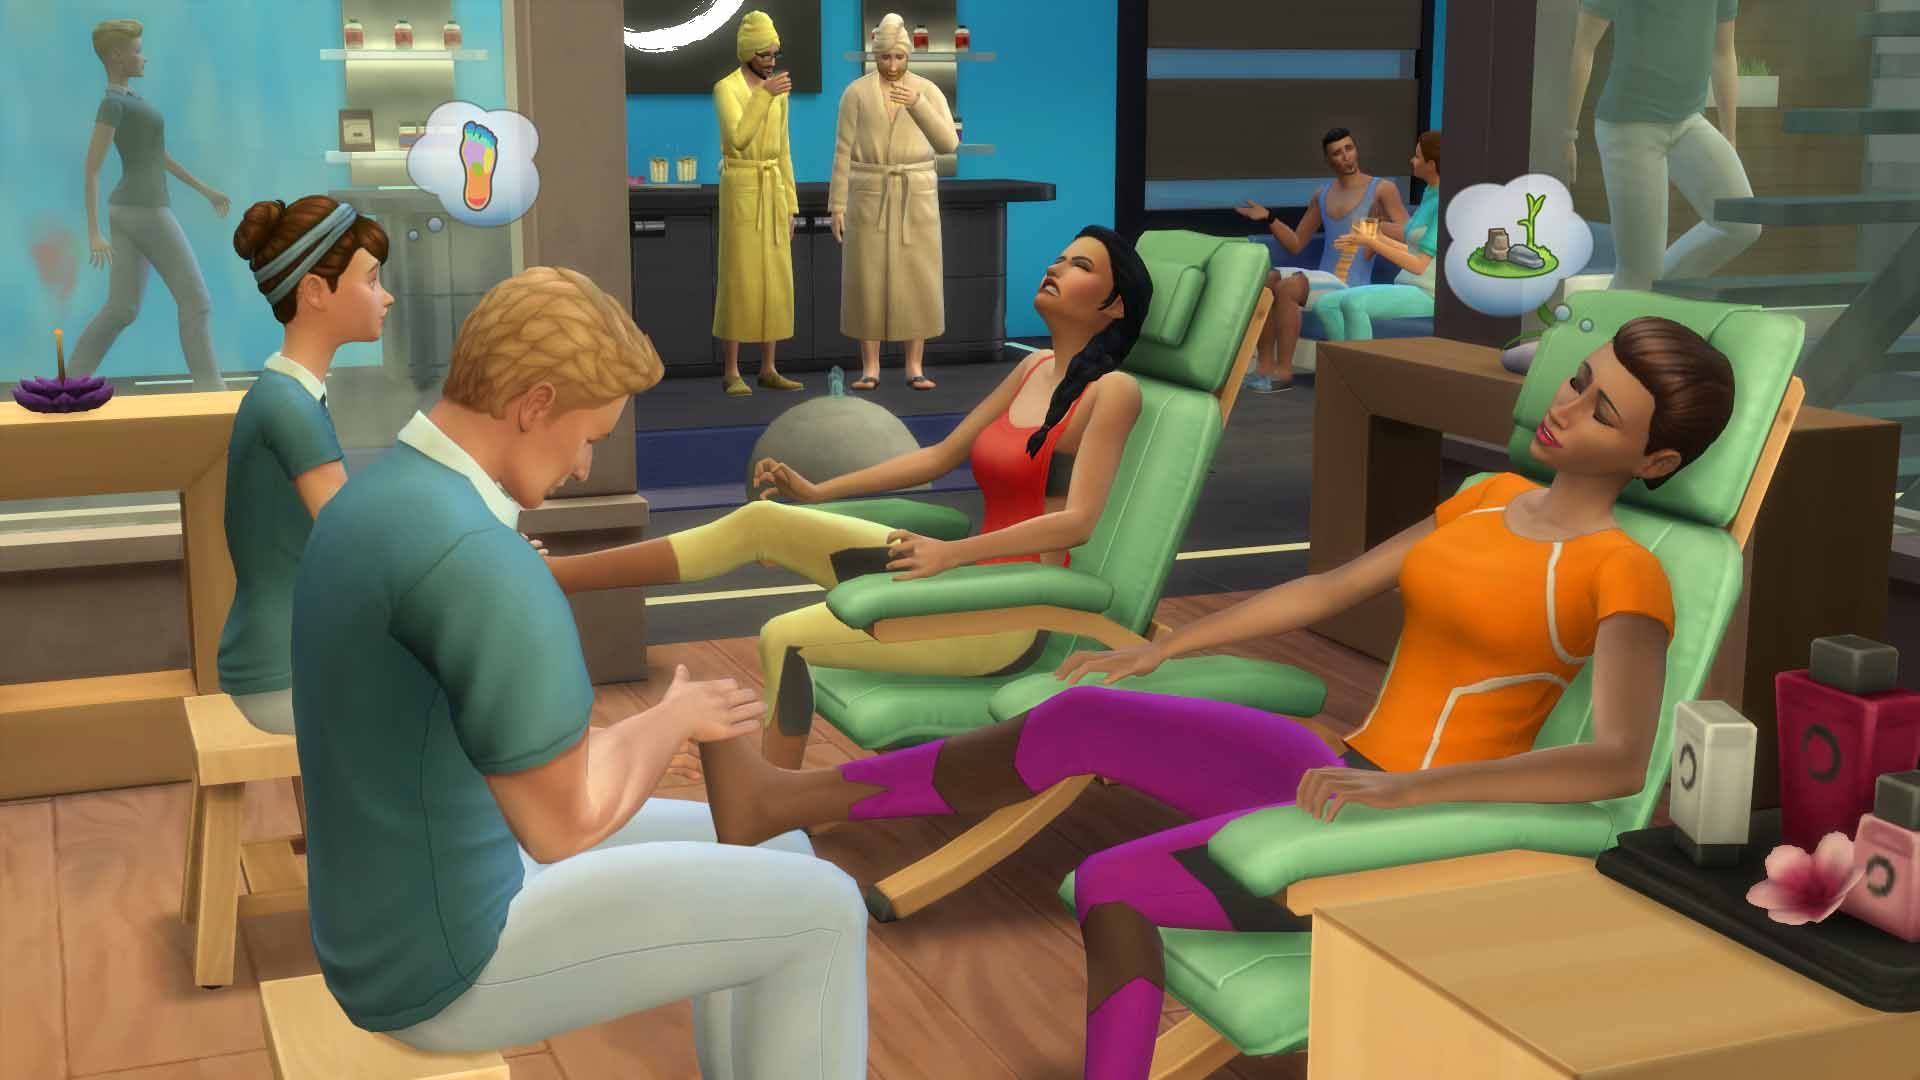 Bạn yêu thích The Sims 4 và muốn có thêm các lựa chọn thư giãn cho nhân vật của mình? Đừng bỏ lỡ cơ hội sở hữu The Sims 4: Spa Day ngay bây giờ và tham gia vào các hoạt động tại spa cùng với nhân vật mà bạn tạo ra! 